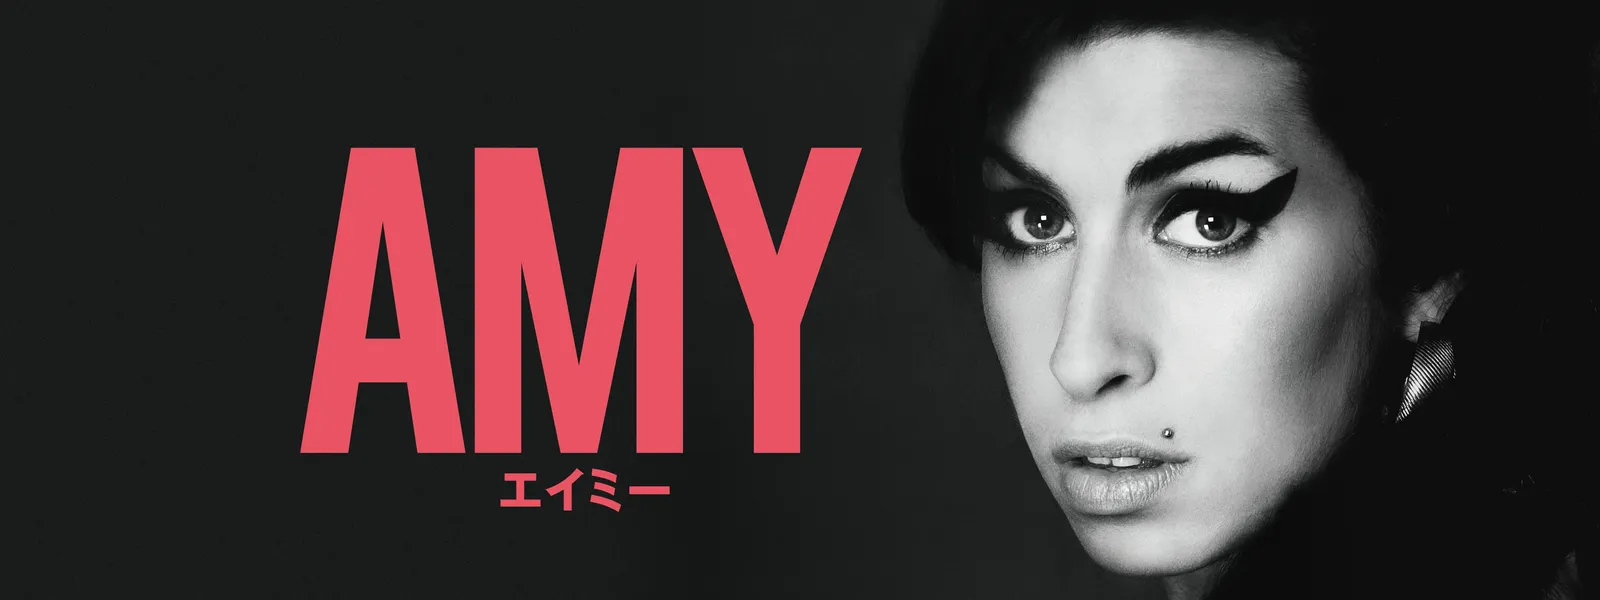 AMY エイミー | Hulu(フールー)